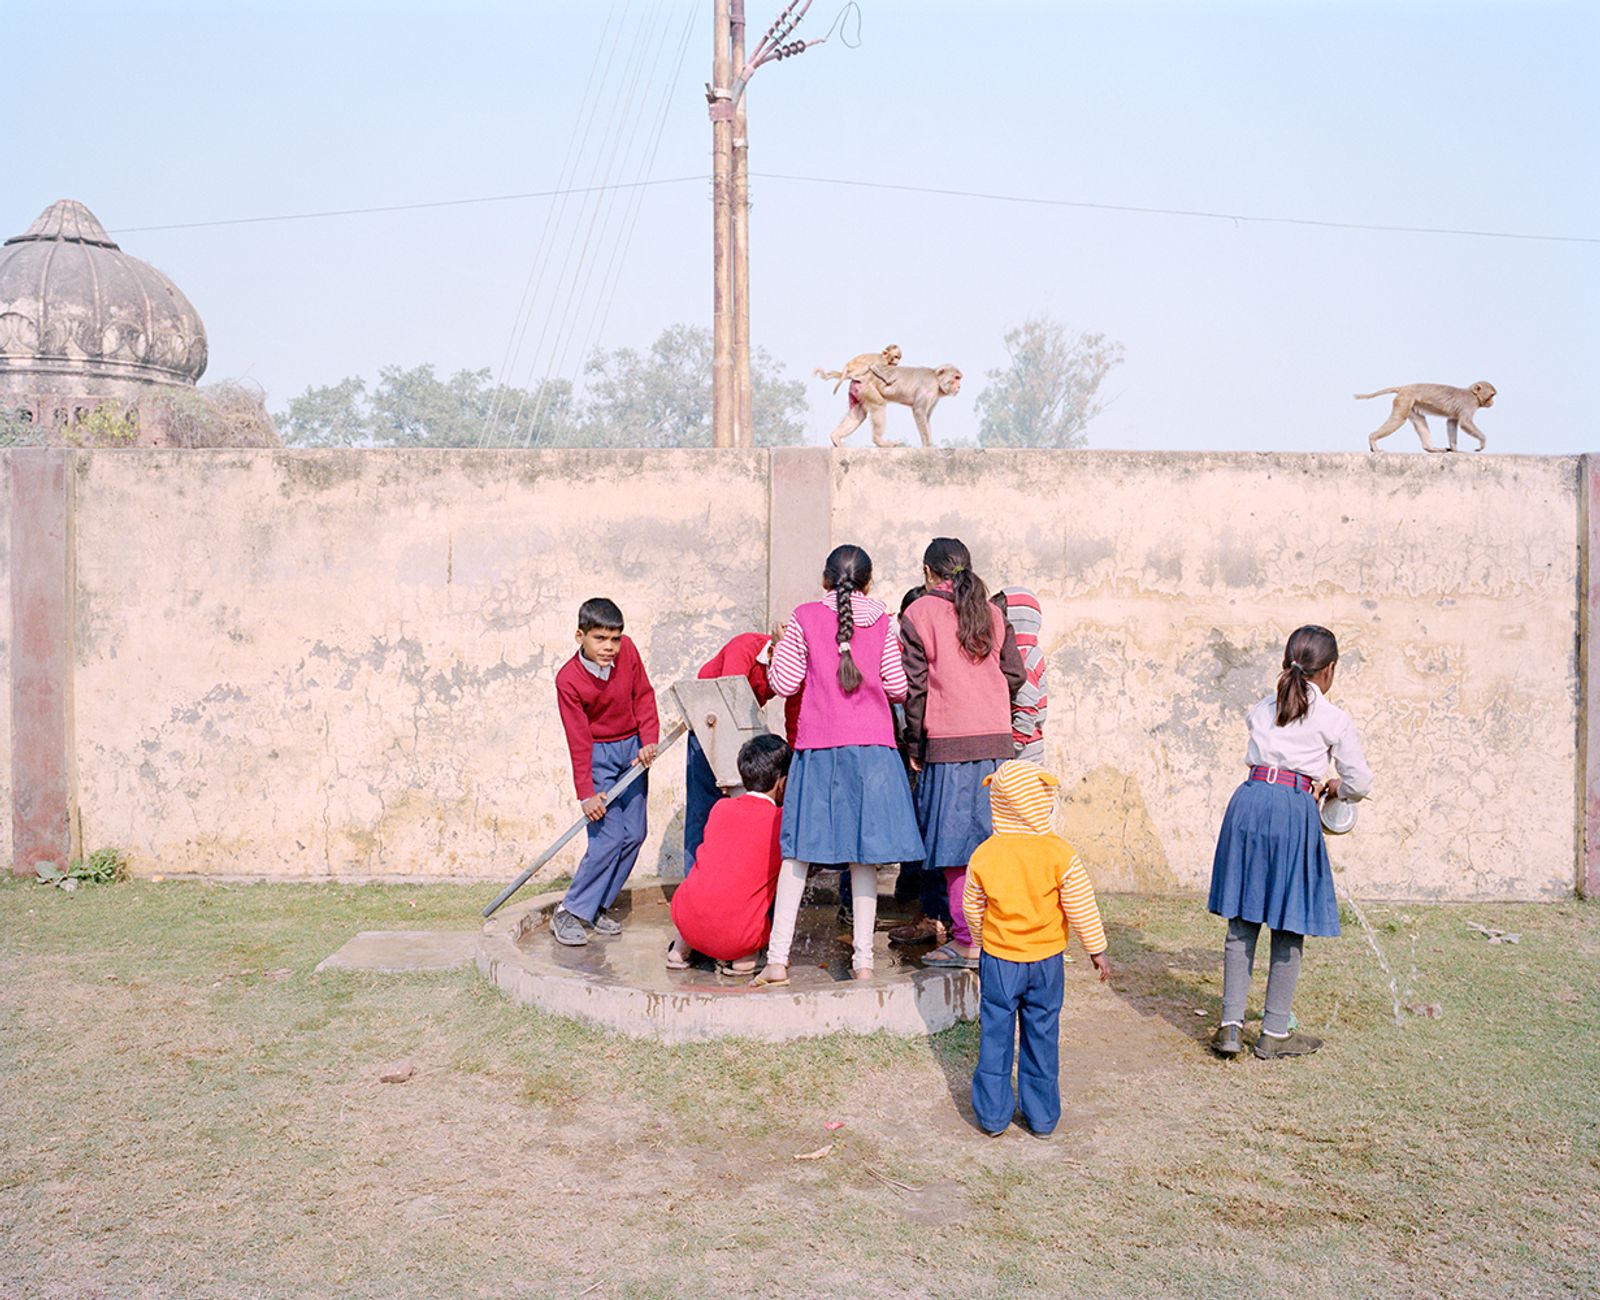 © Vasantha Yogananthan - The Playground, Ayodhya, Uttar Pradesh, India, 2015